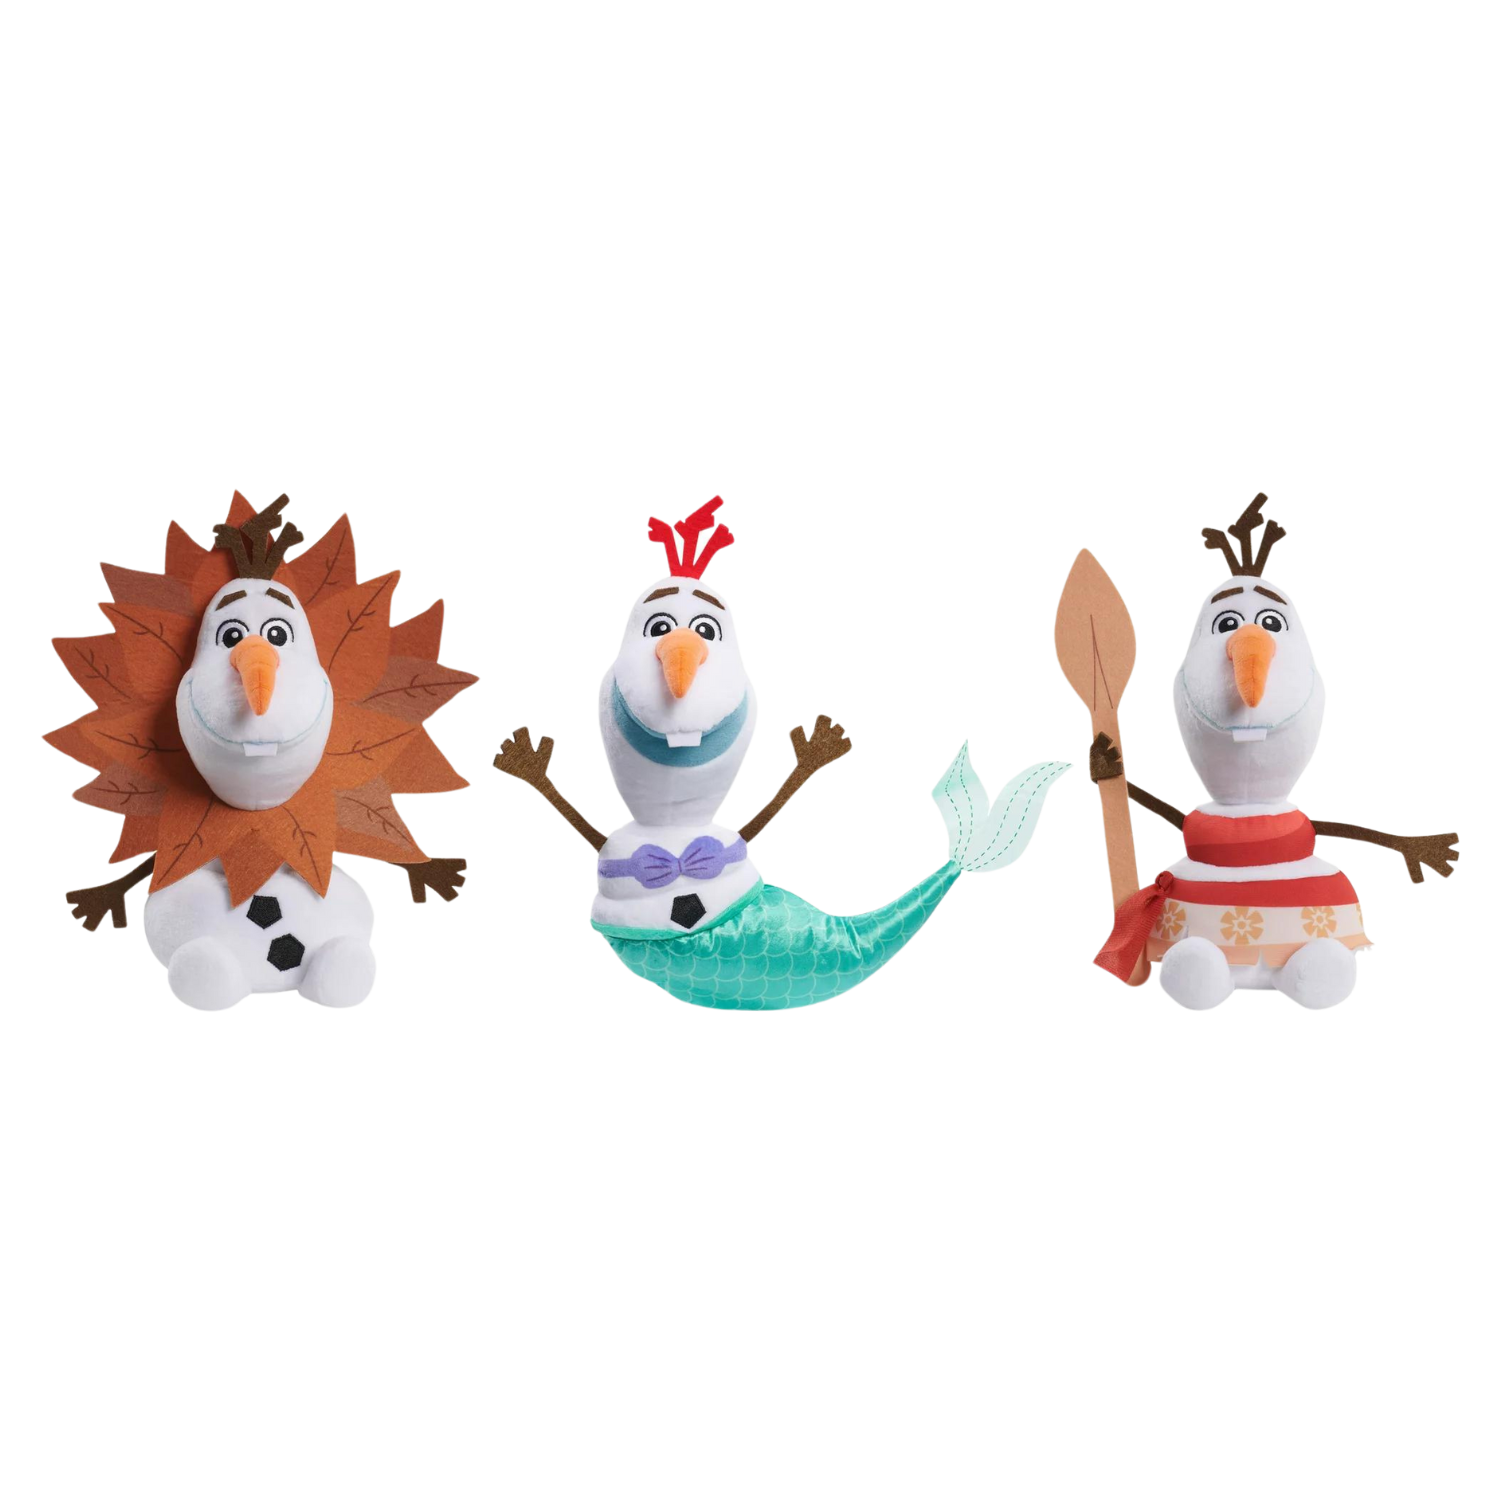 Cette image montre trois poupées d'Olaf le bonhomme de neige de La Reine des Neiges déguisées en Simba, en Ariel et en Moana.